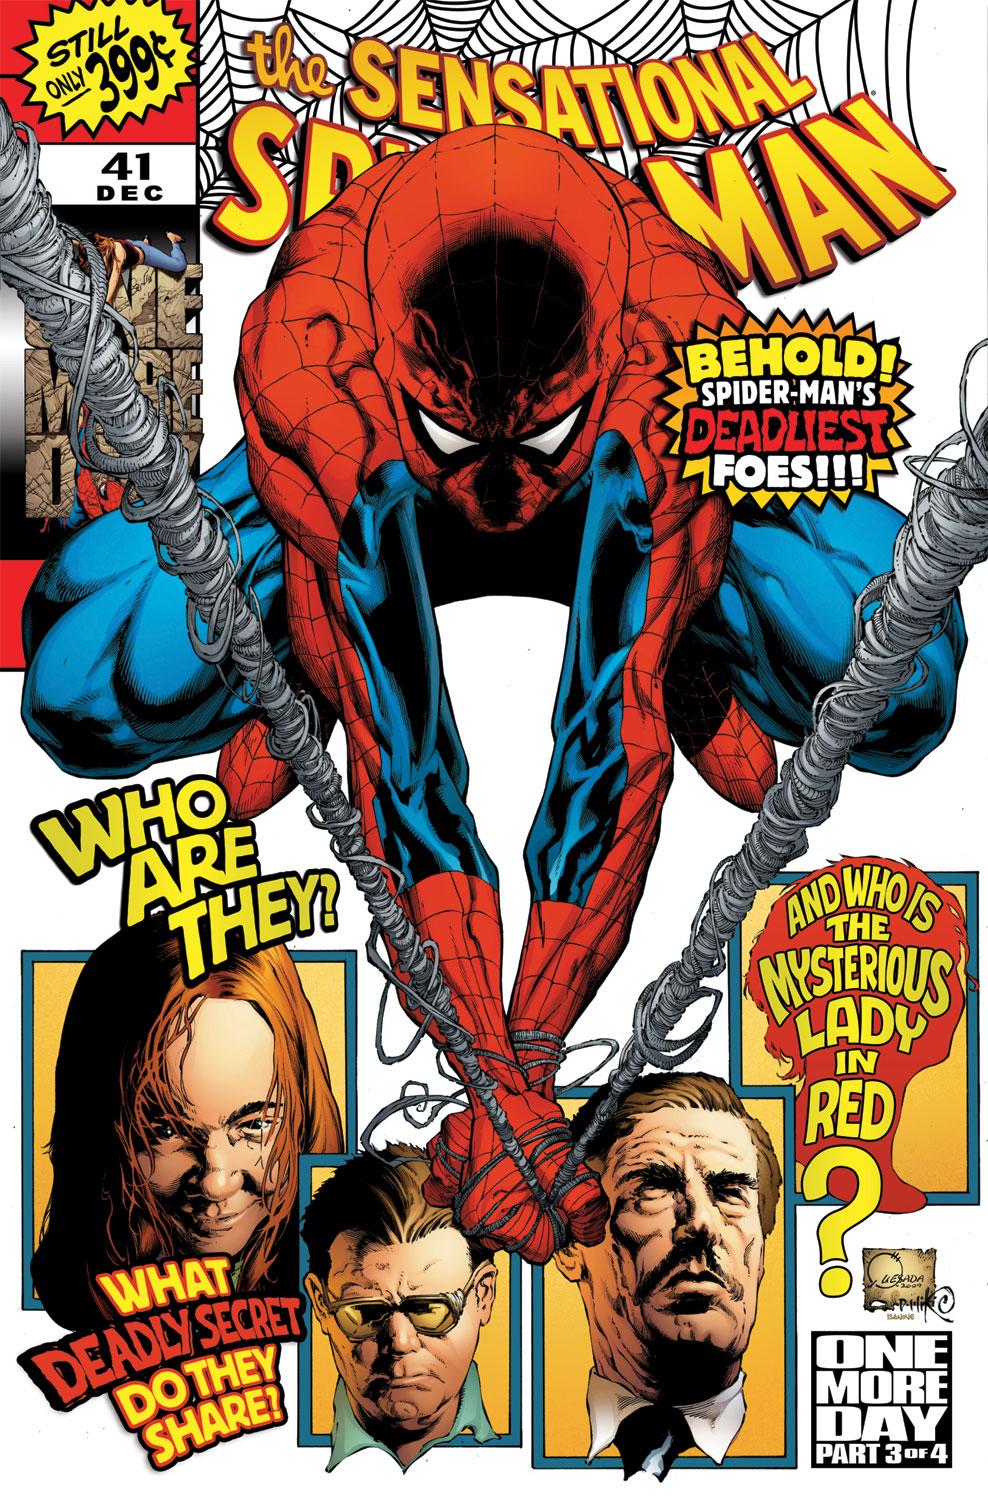 VF 8.0 "No Way Home" Story; Quesada Cover Sensational Spider-Man #41